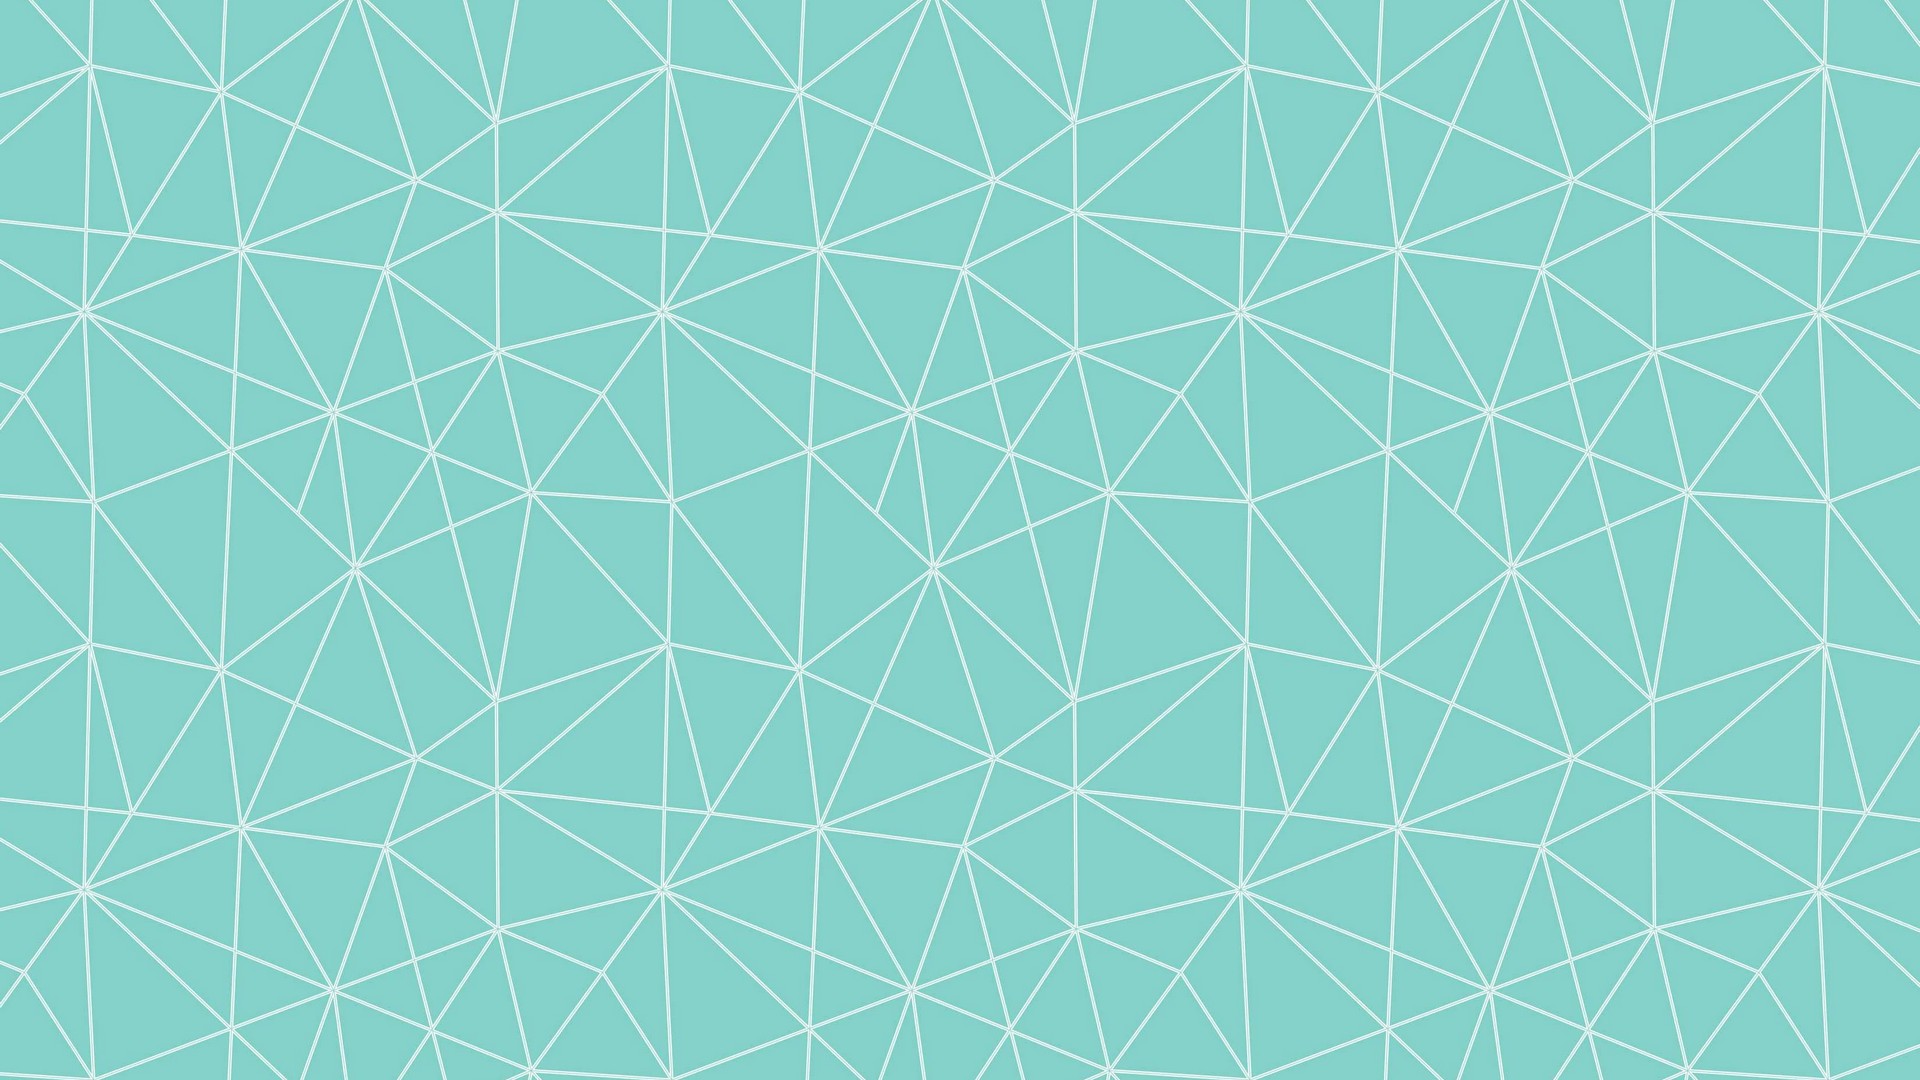 Mint Green Desktop Backgrounds 2020 Live Wallpaper Hd